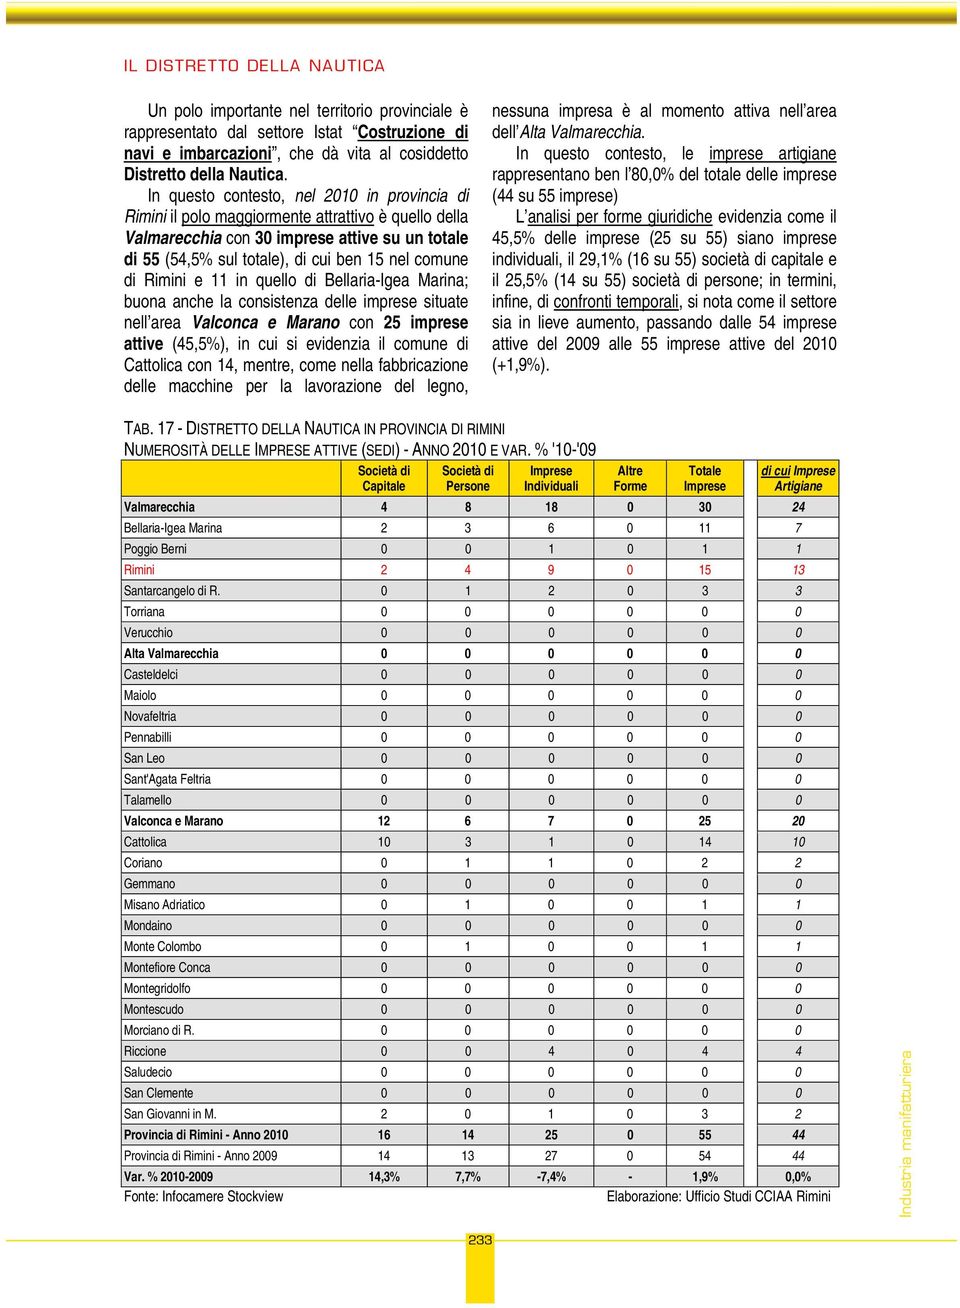 Rimini e 11 in quello di Bellaria-Igea Marina; buona anche la consistenza delle imprese situate nell area Valconca e Marano con 25 imprese attive (45,5%), in cui si evidenzia il comune di Cattolica